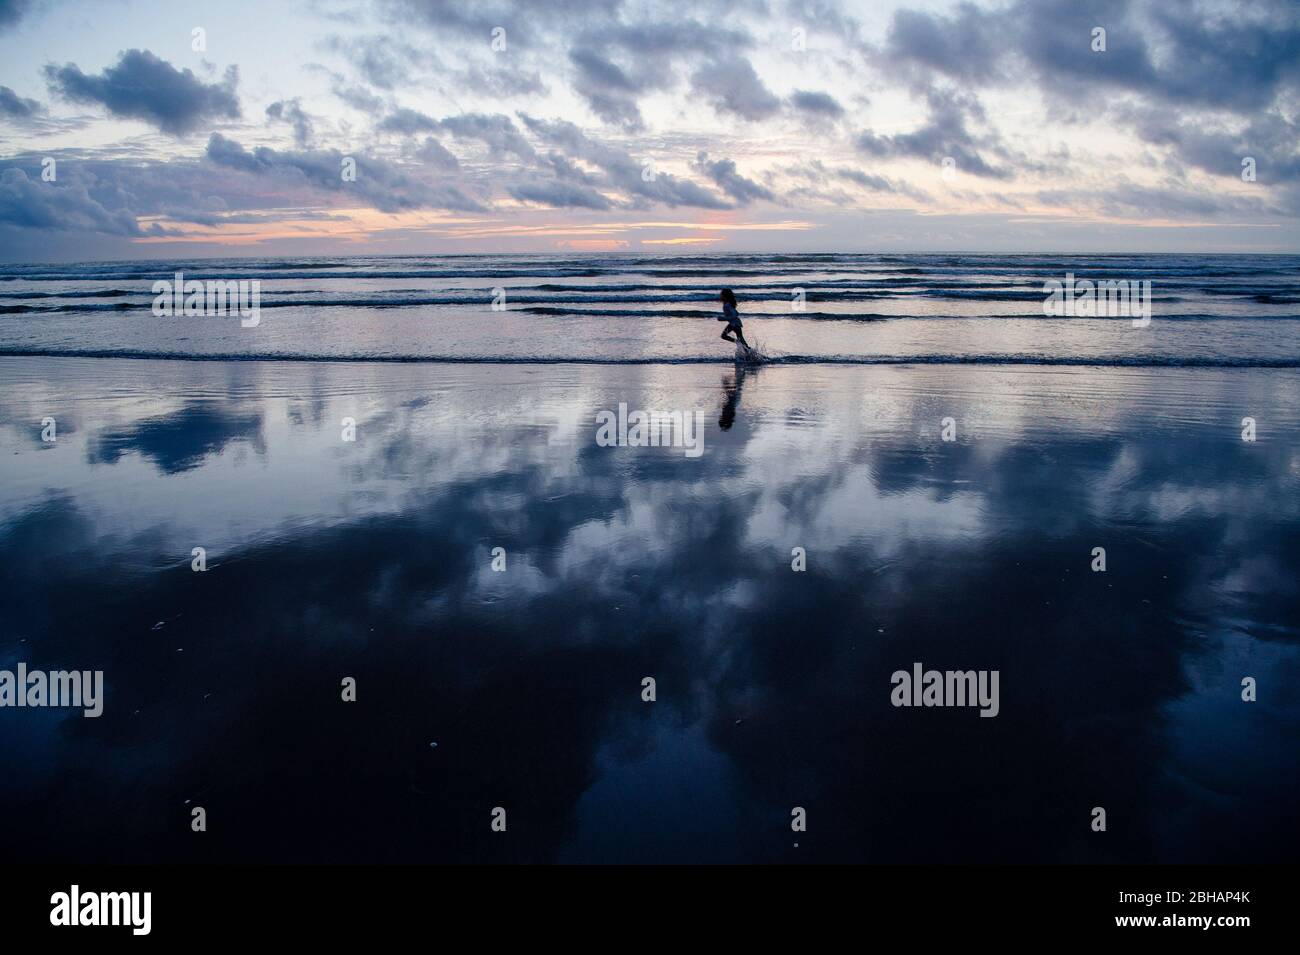 Girl running on beach at sunset, Seaside, Oregon, USA Stock Photo